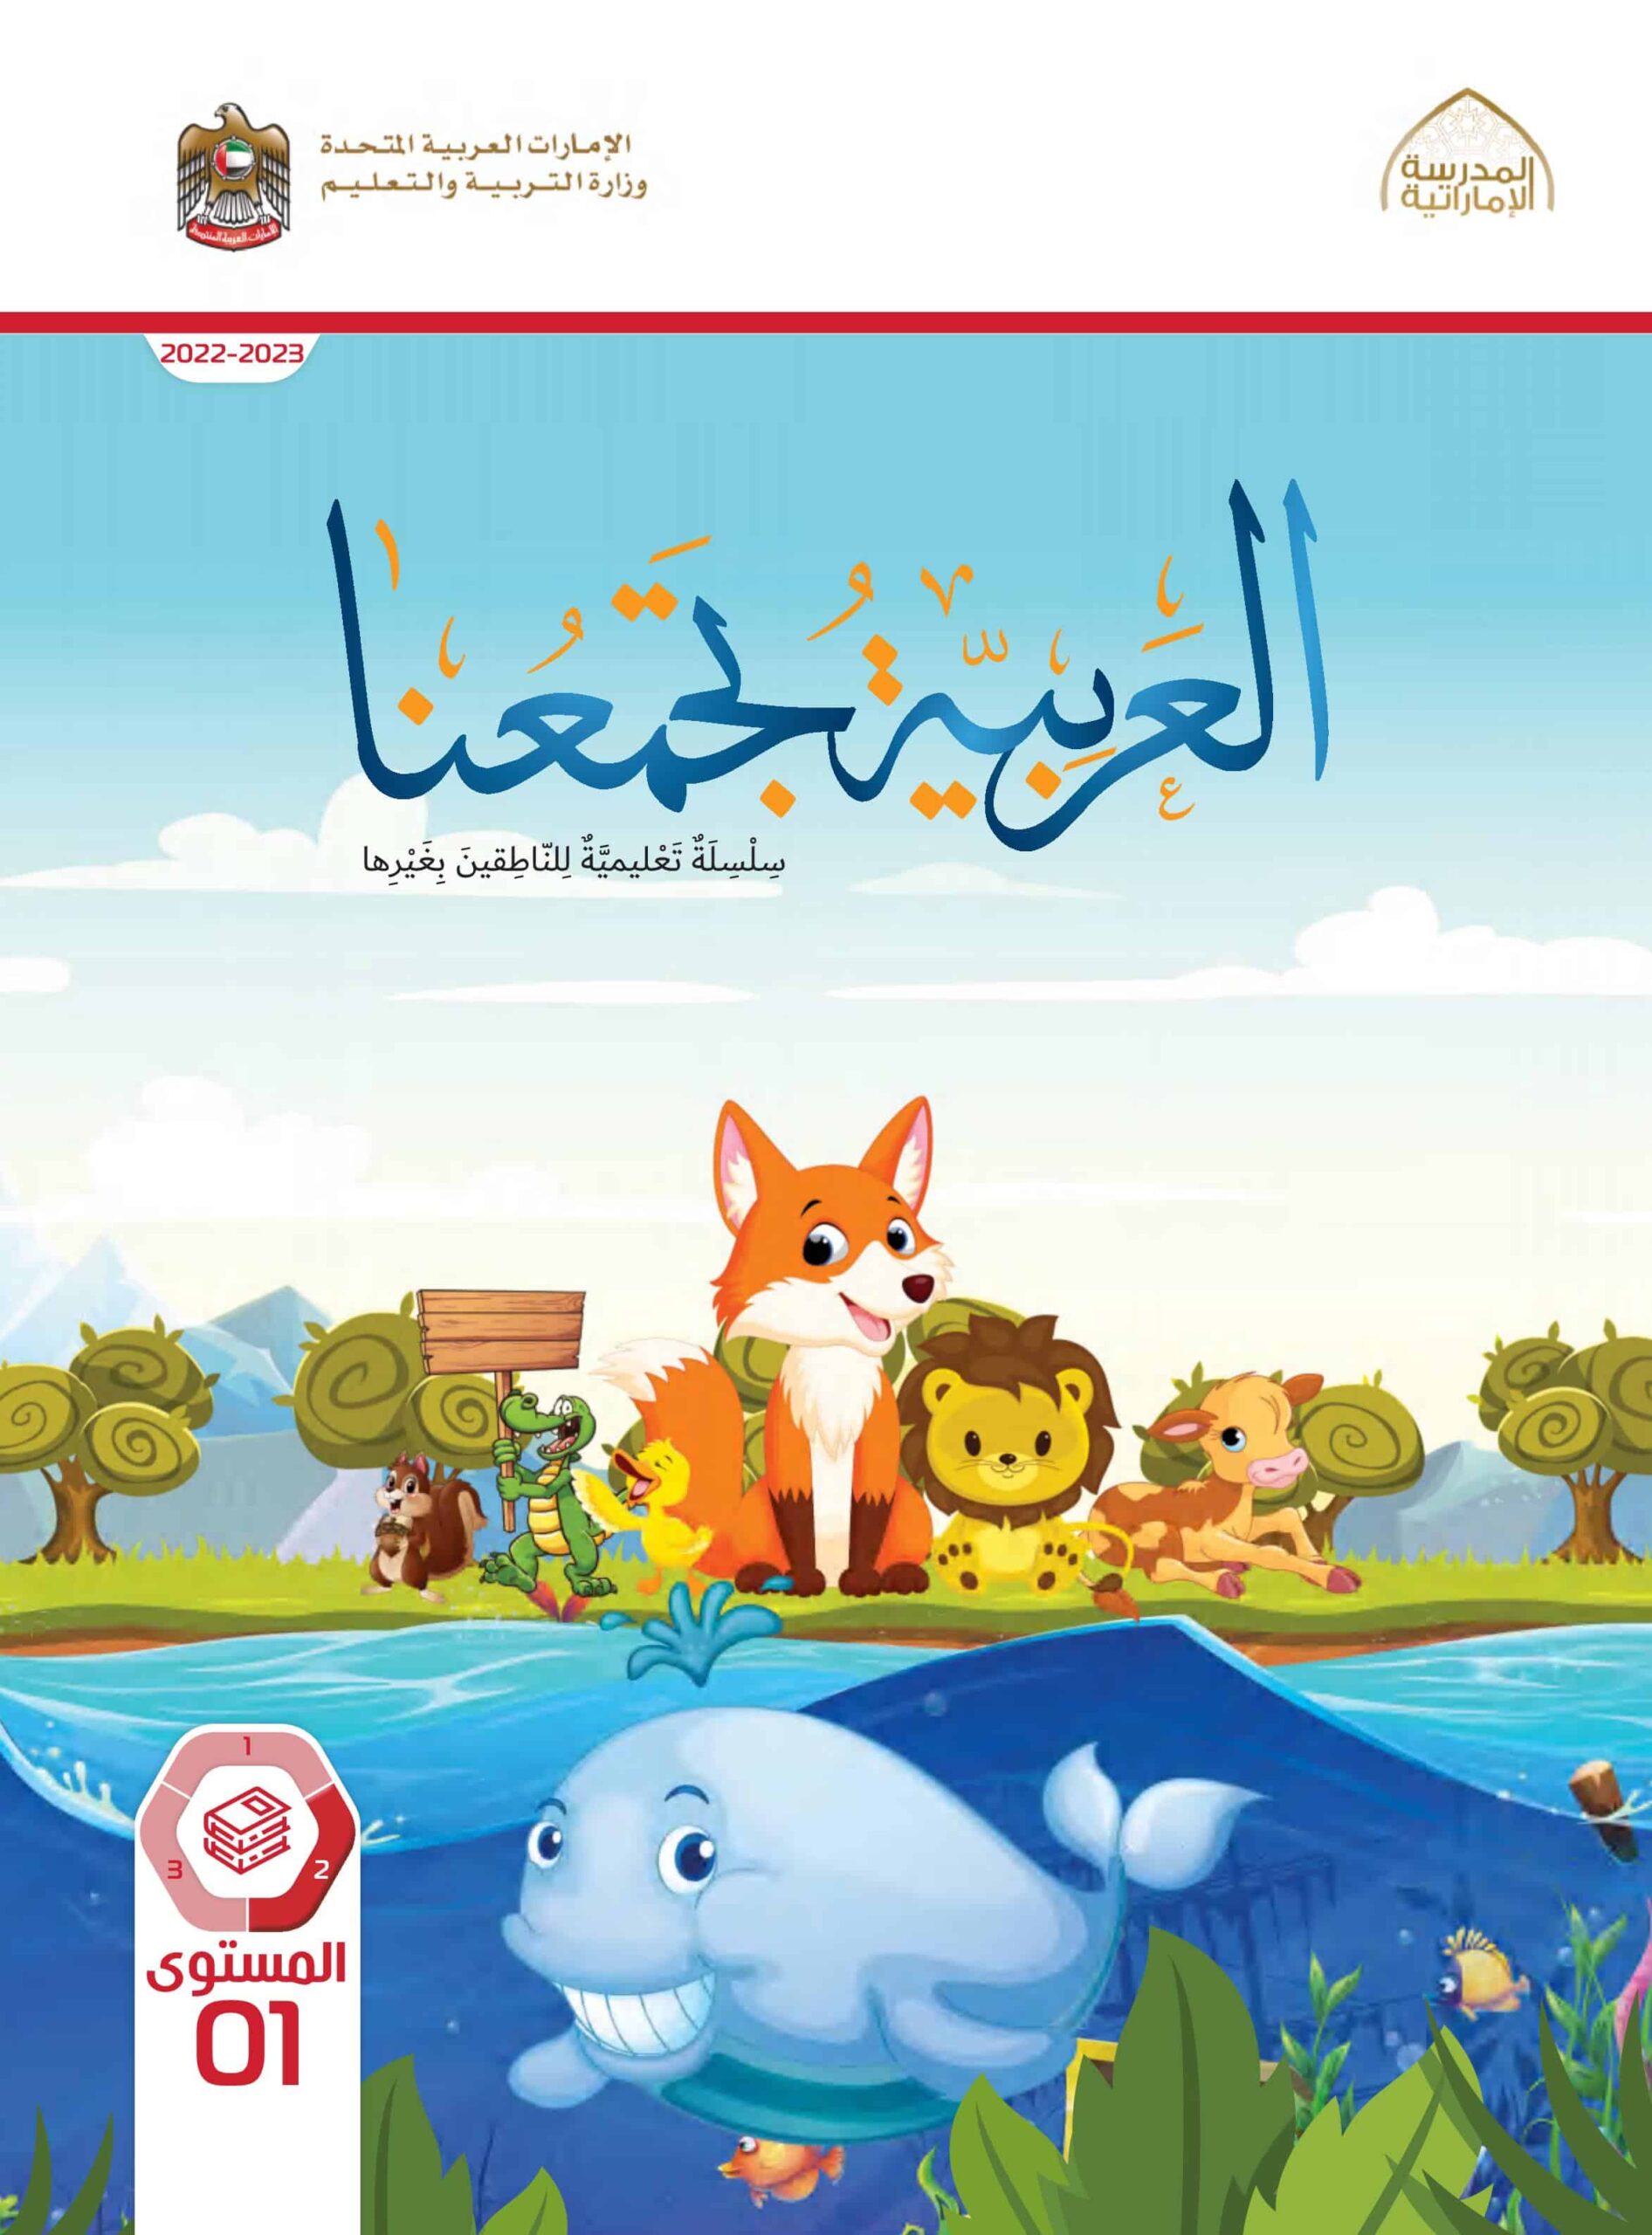 كتاب الطالب لغير الناطقين بها اللغة العربية الصف الأول الفصل الدراسي الثاني 2022-2023